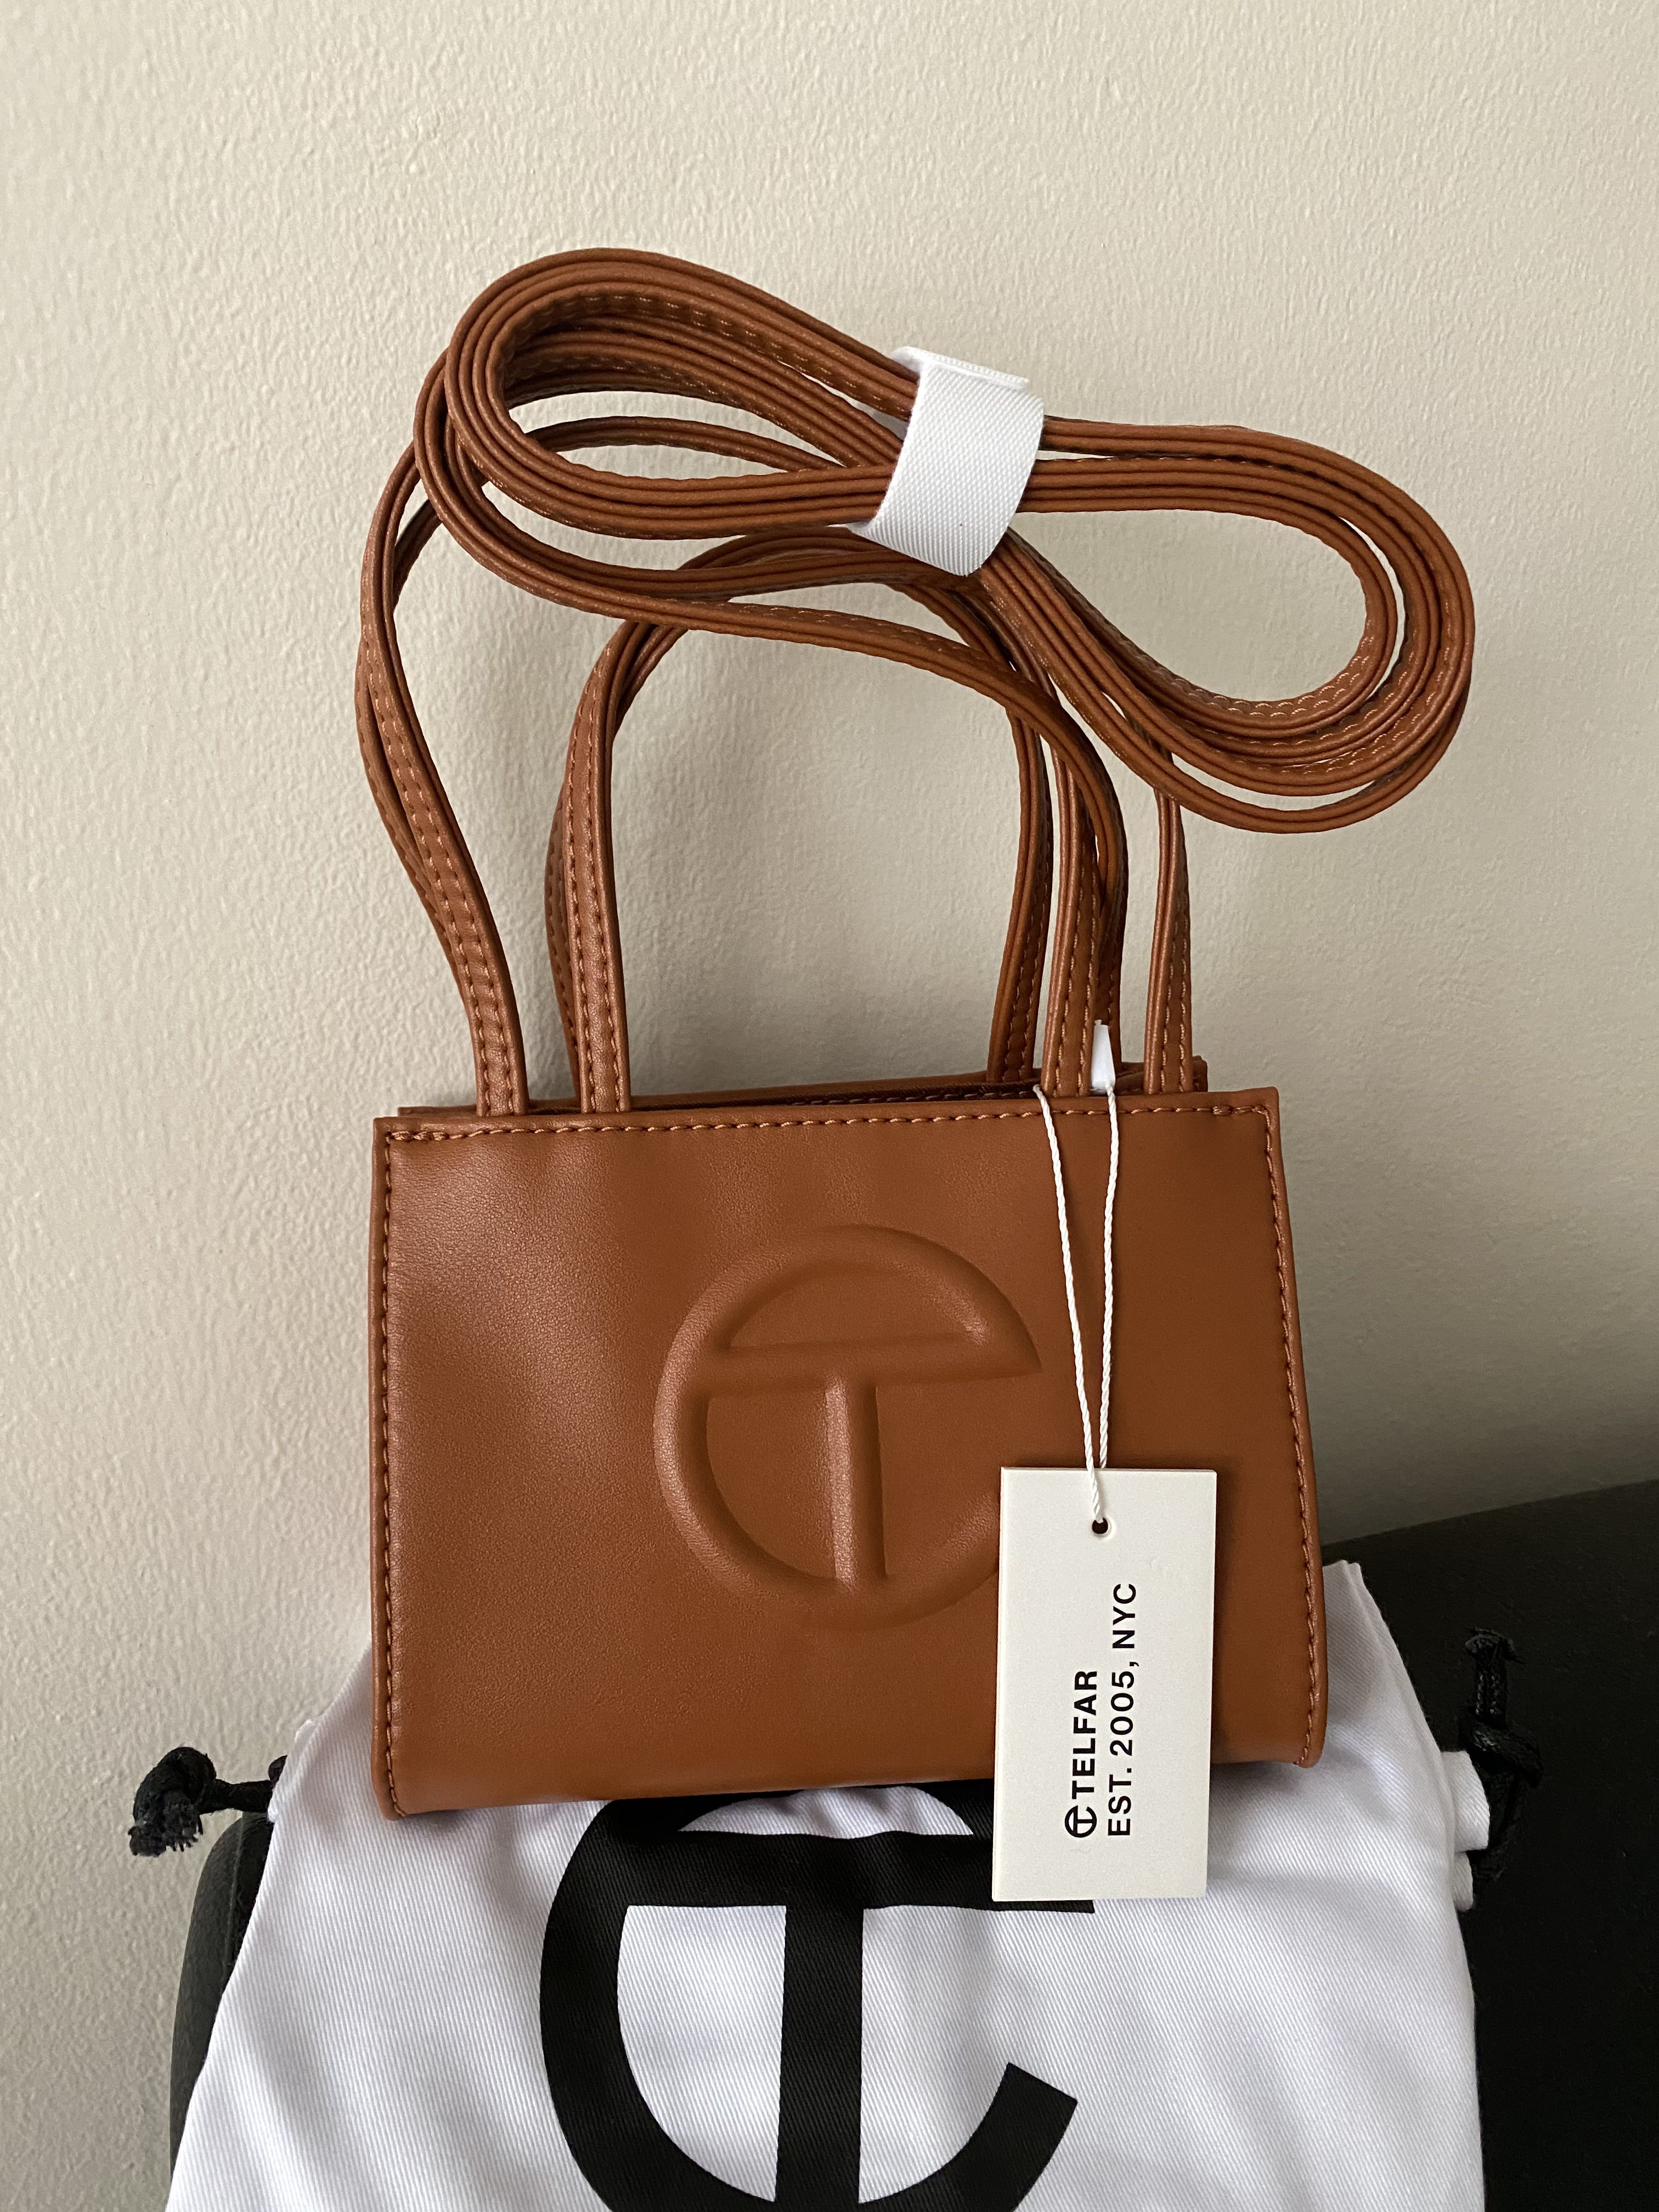 Telfar Small Tan Shopping bag